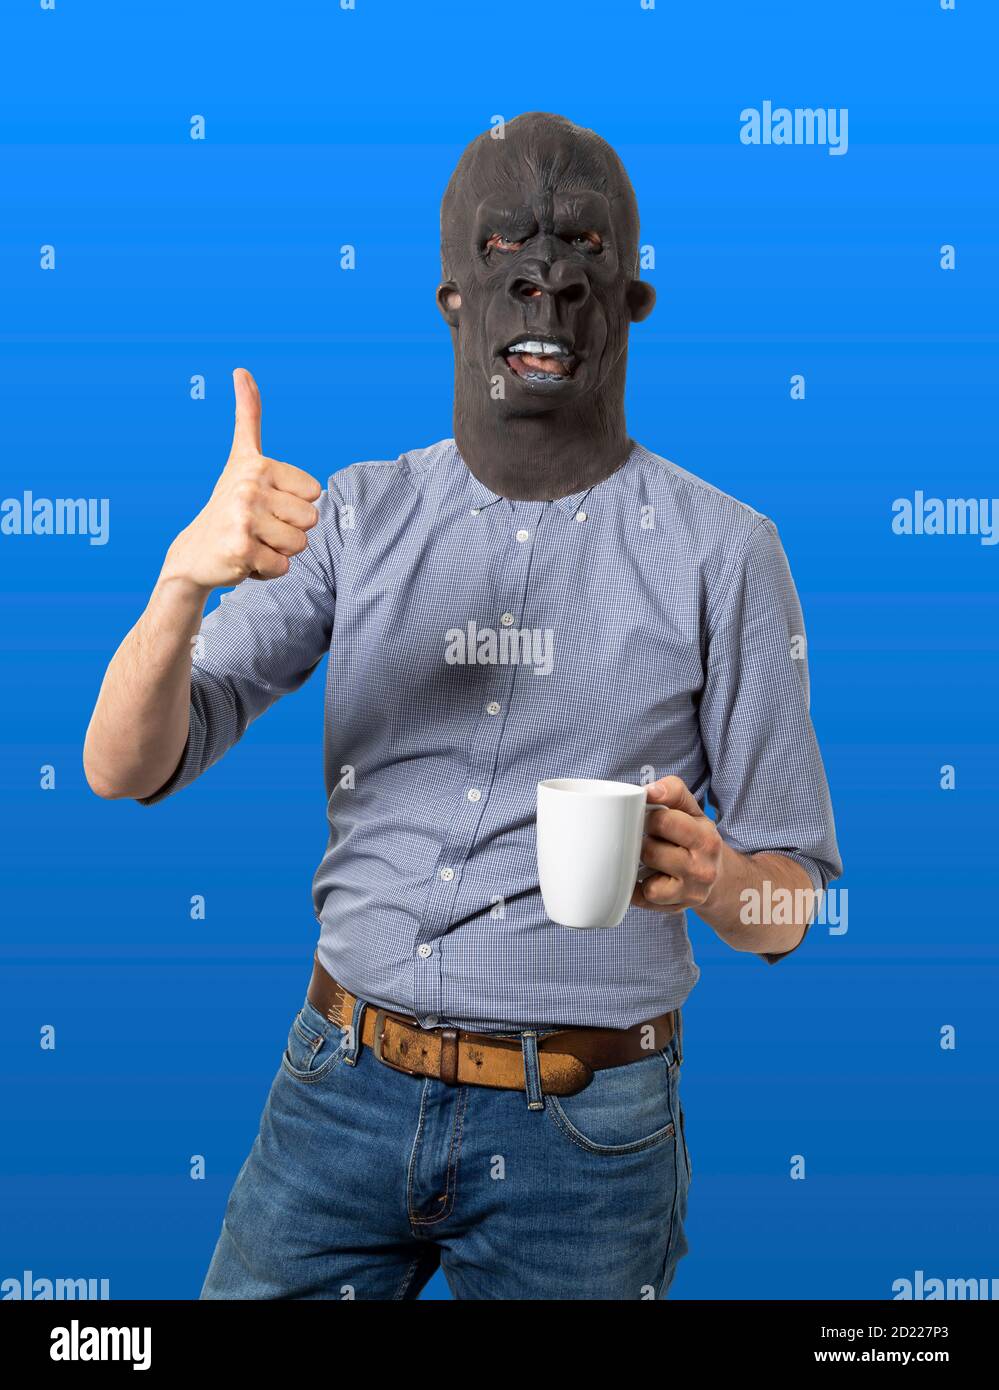 Homme dans le masque de gorille donnant les pouces vers le haut et tenant la tasse de café. Arrière-plan bleu isolé. Prise de vue moyenne. Banque D'Images